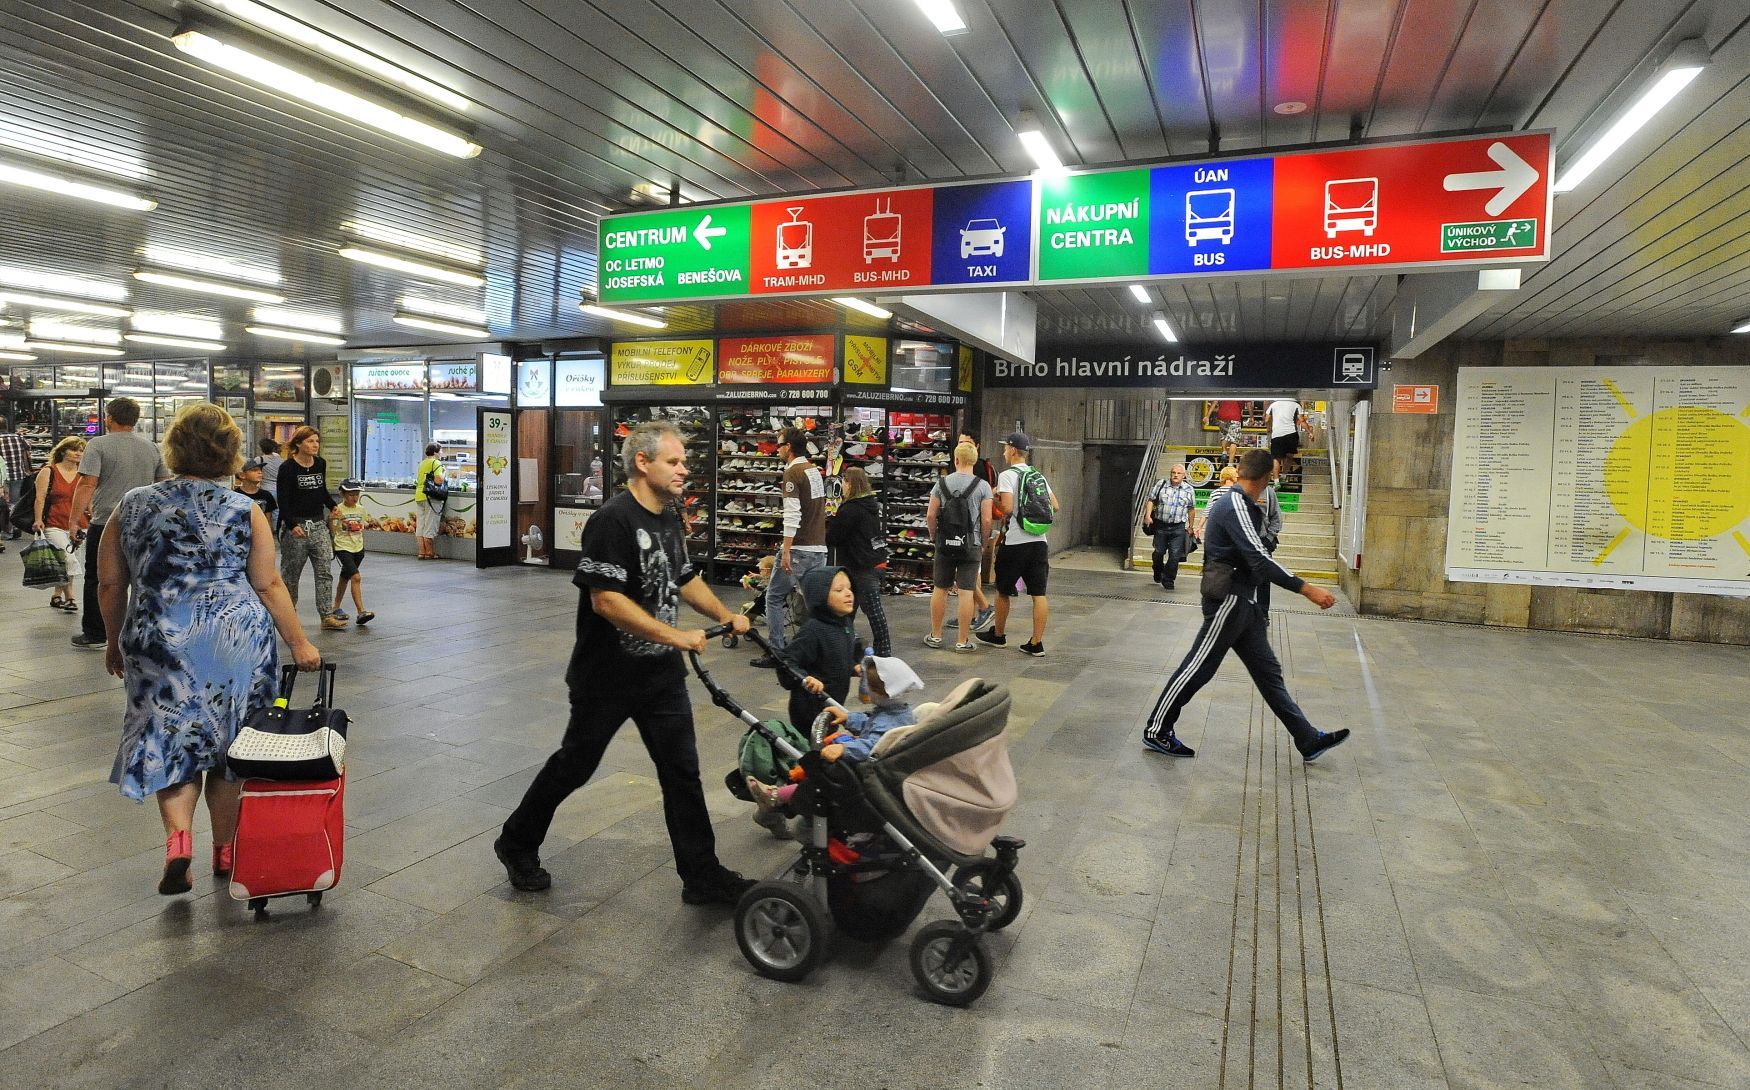 Brno hlavní nádraží - podchod